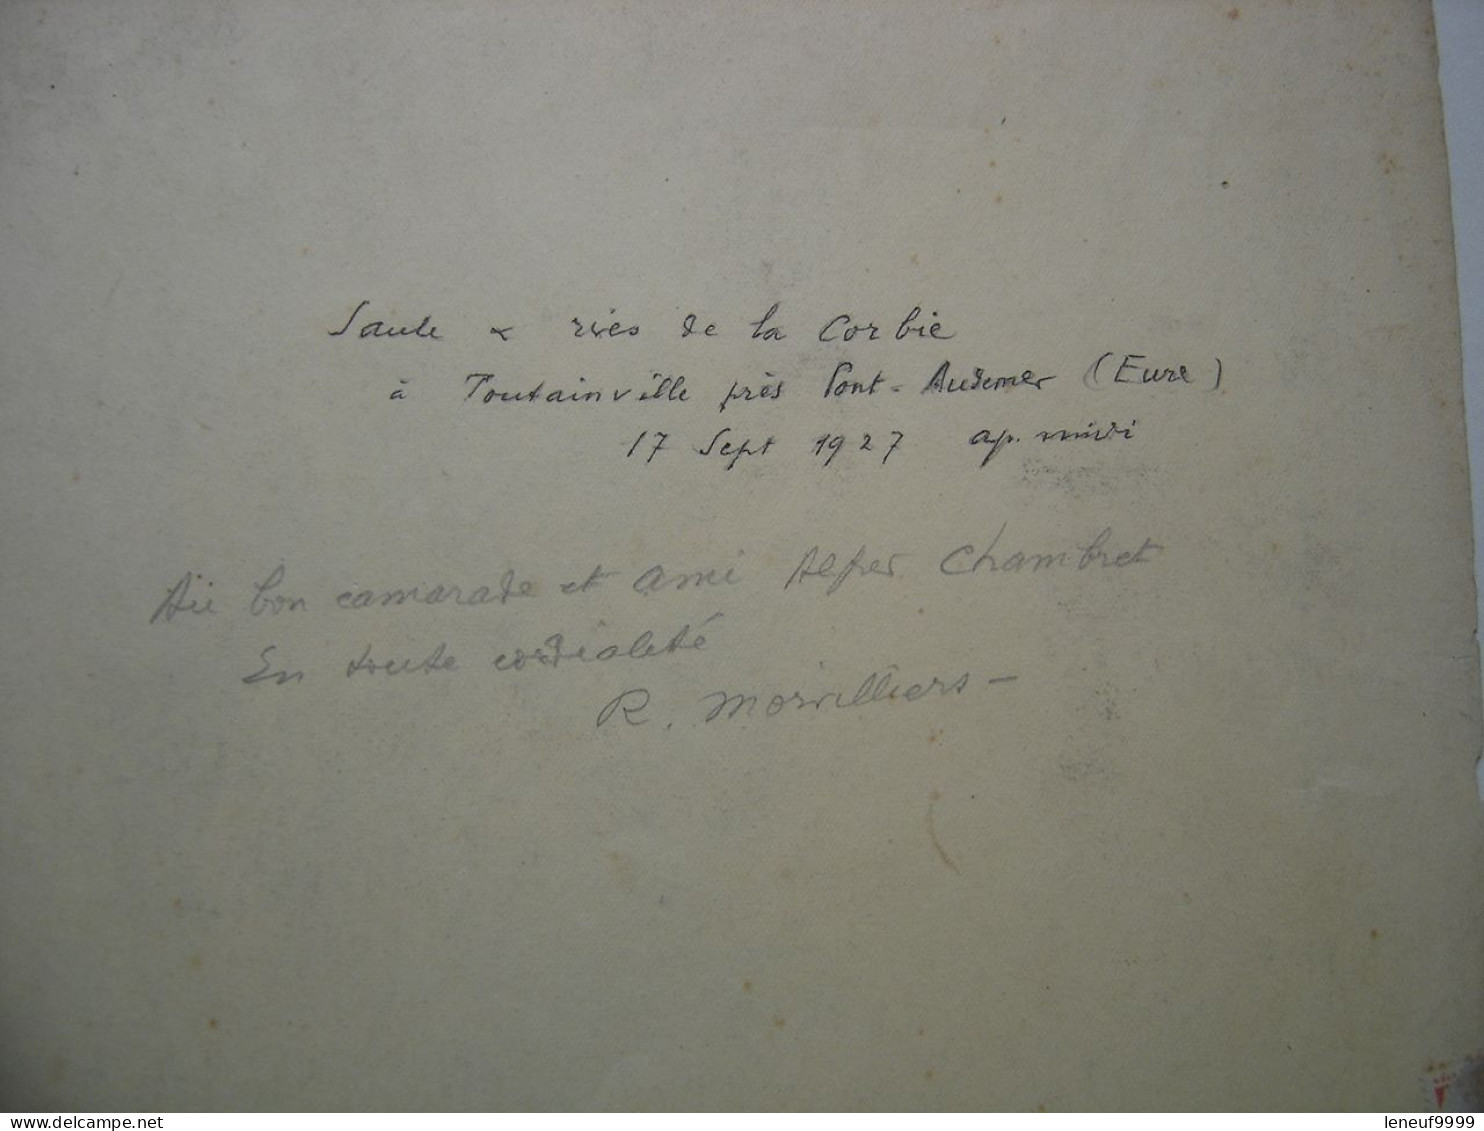 Estampe Signee Et Dedicacee R MORVILLIERS 1927 Situee Dans L'Eure Corbie Toutainville - Contemporary Art